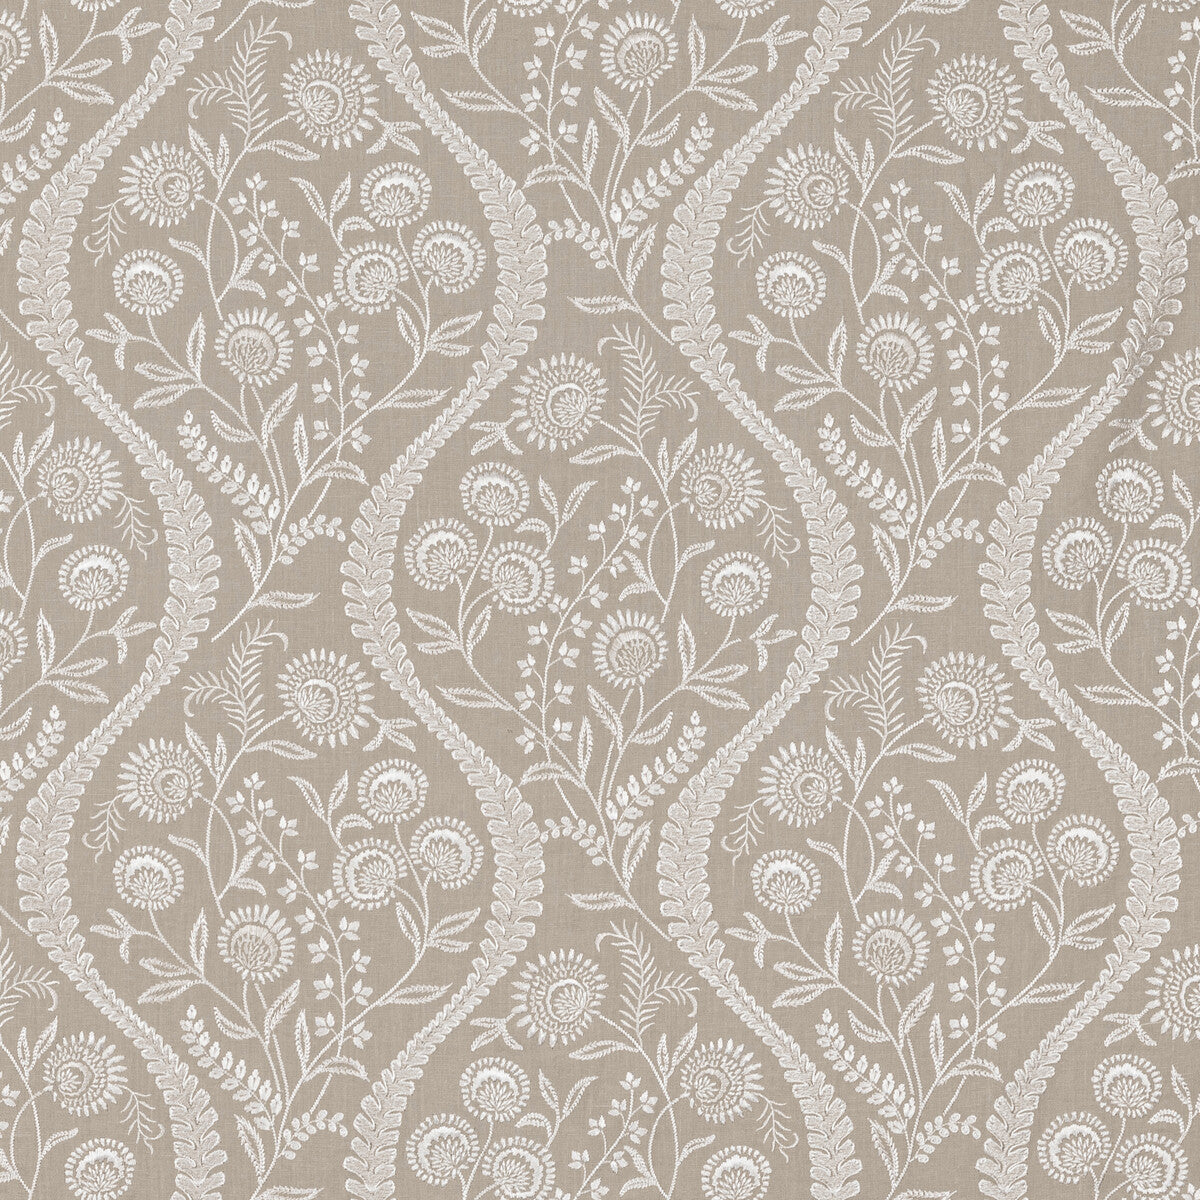 Floriblanca fabric in linen color - pattern 2020219.16.0 - by Lee Jofa in the Oscar De La Renta IV collection